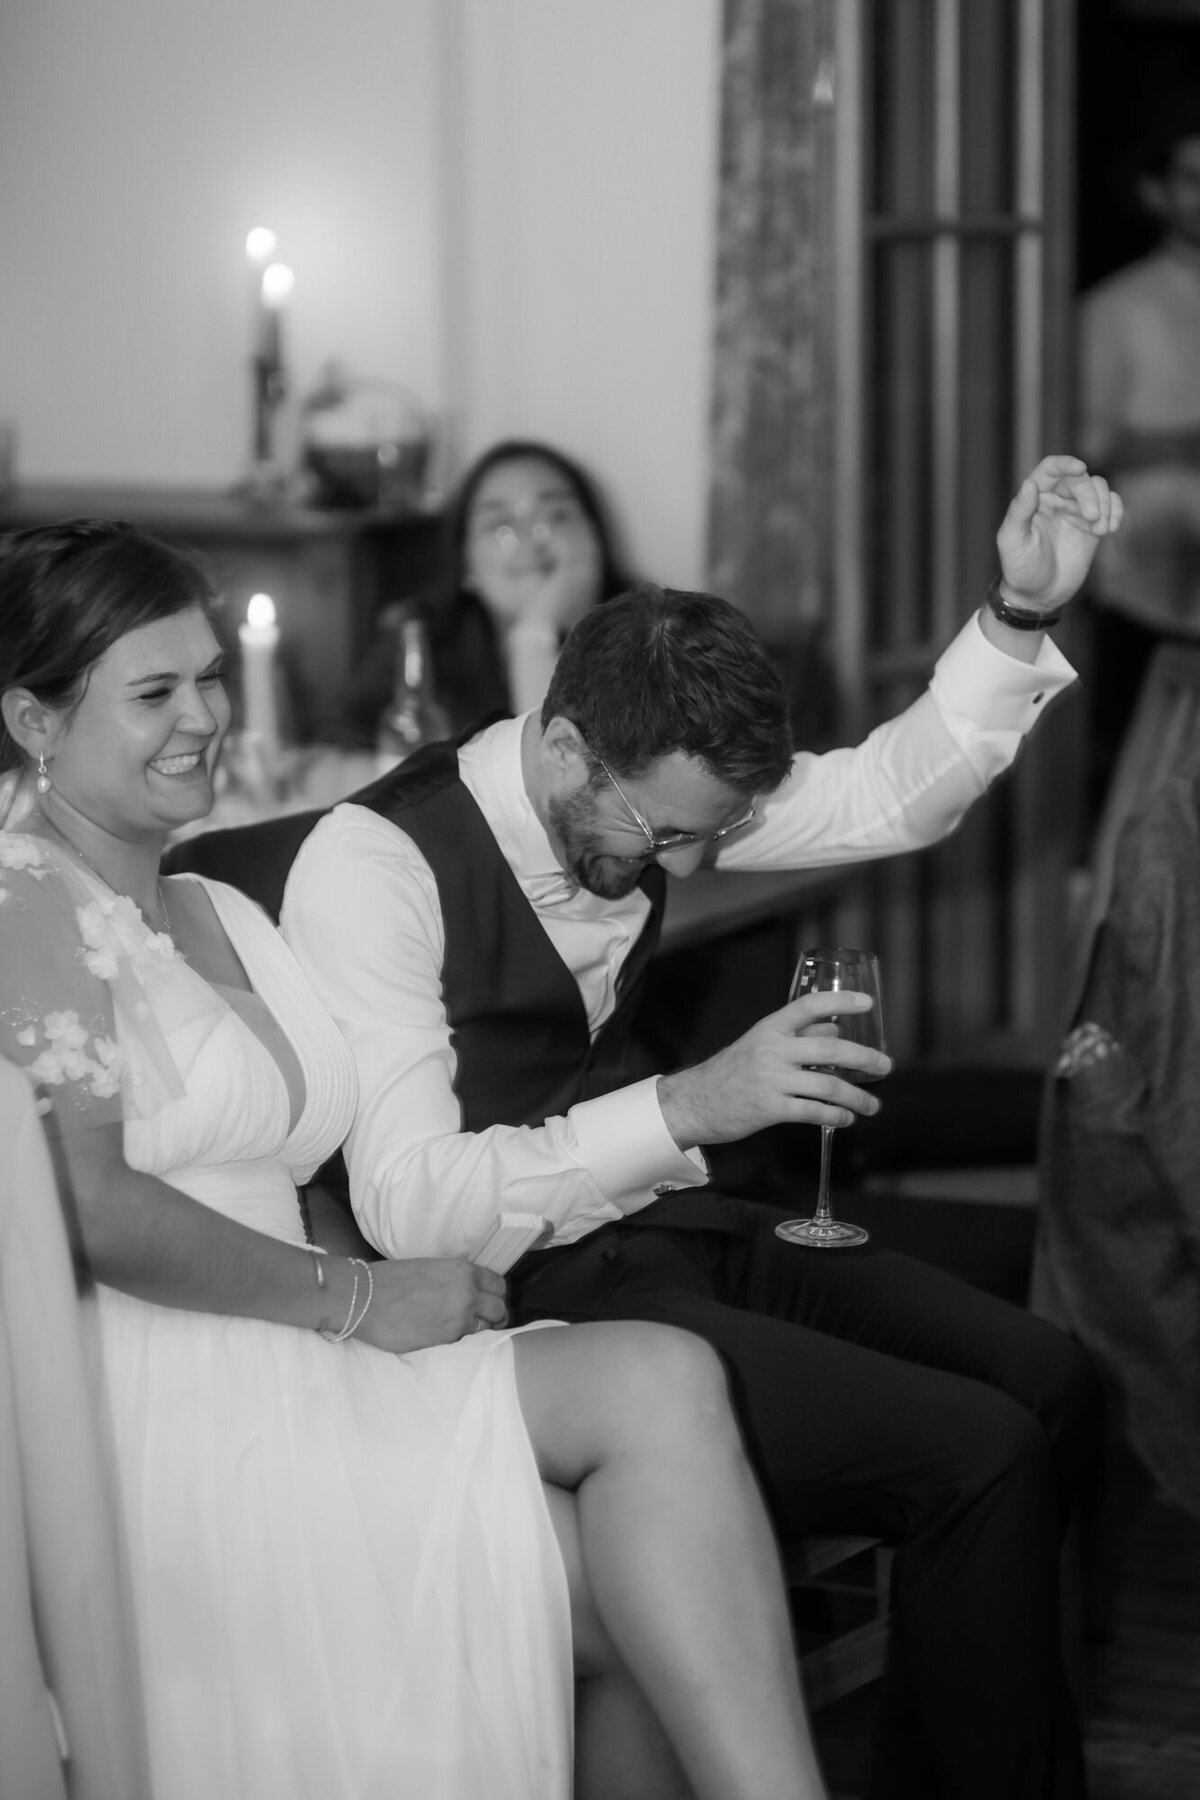 Der Bräutigam jubelt bei der Feier, während das Hochzeitspaar nebeneinander sitzt.